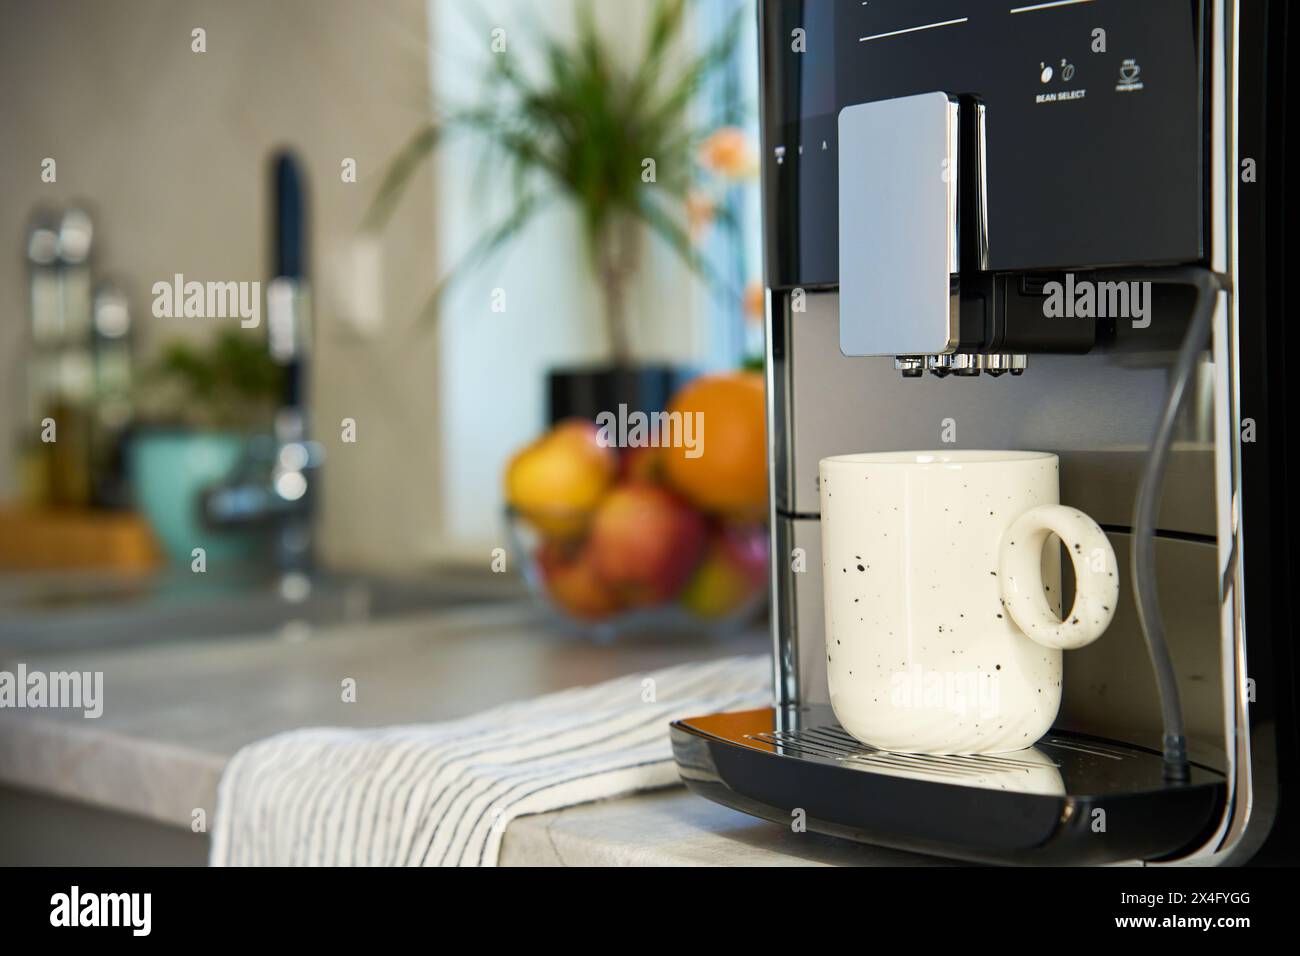 Frischer Espresso am Morgen. Kaffeemaschine in der Küche, Nahaufnahme. Moderne Kaffeemaschine mit frisch gebrühtem Kaffee in einer Tasse. Küchengeräte Stockfoto